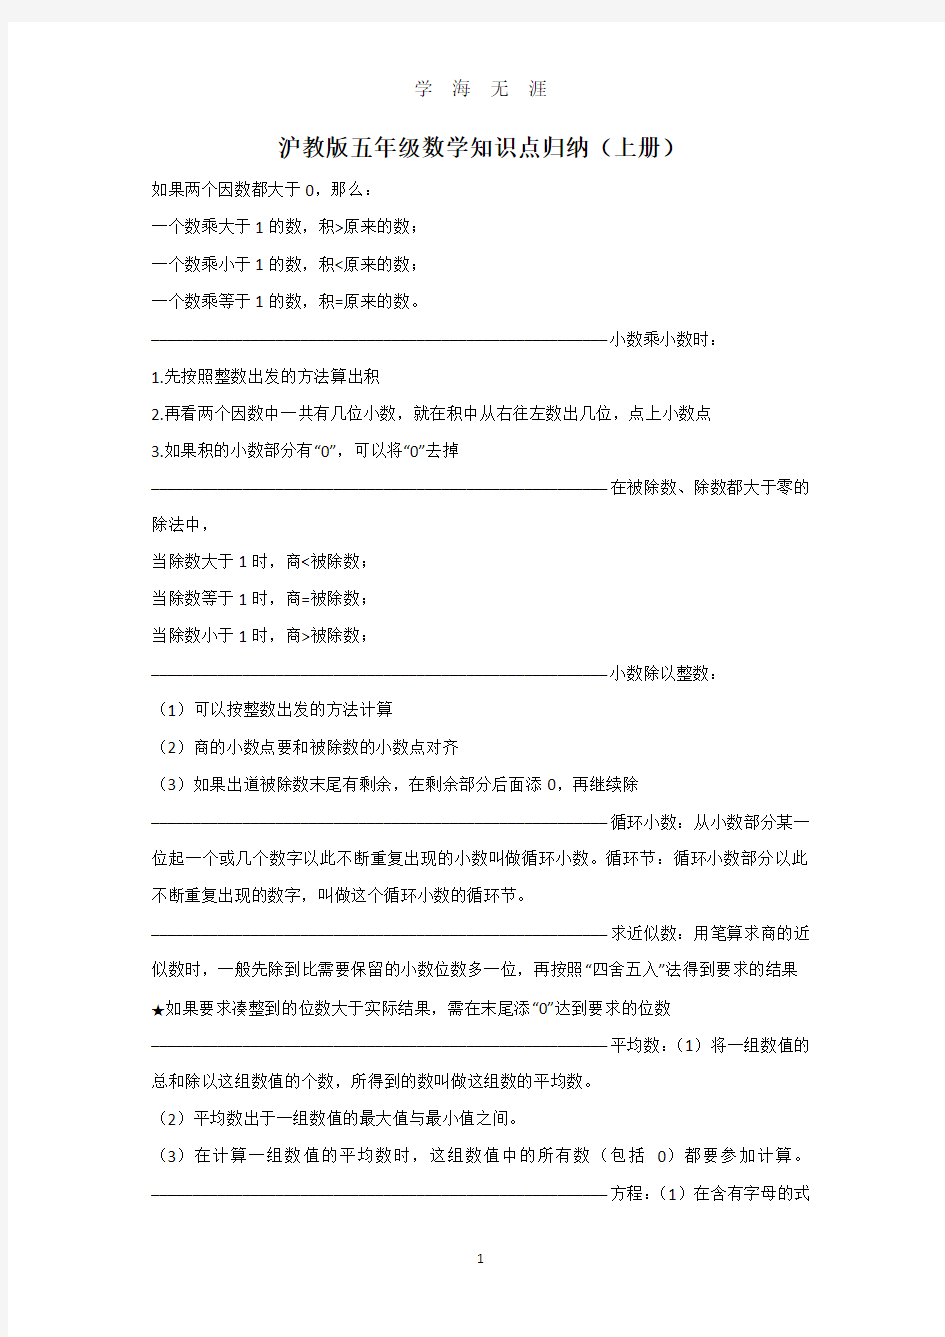 沪教版五年级数学知识点归纳(上册)(2020年7月整理).pdf